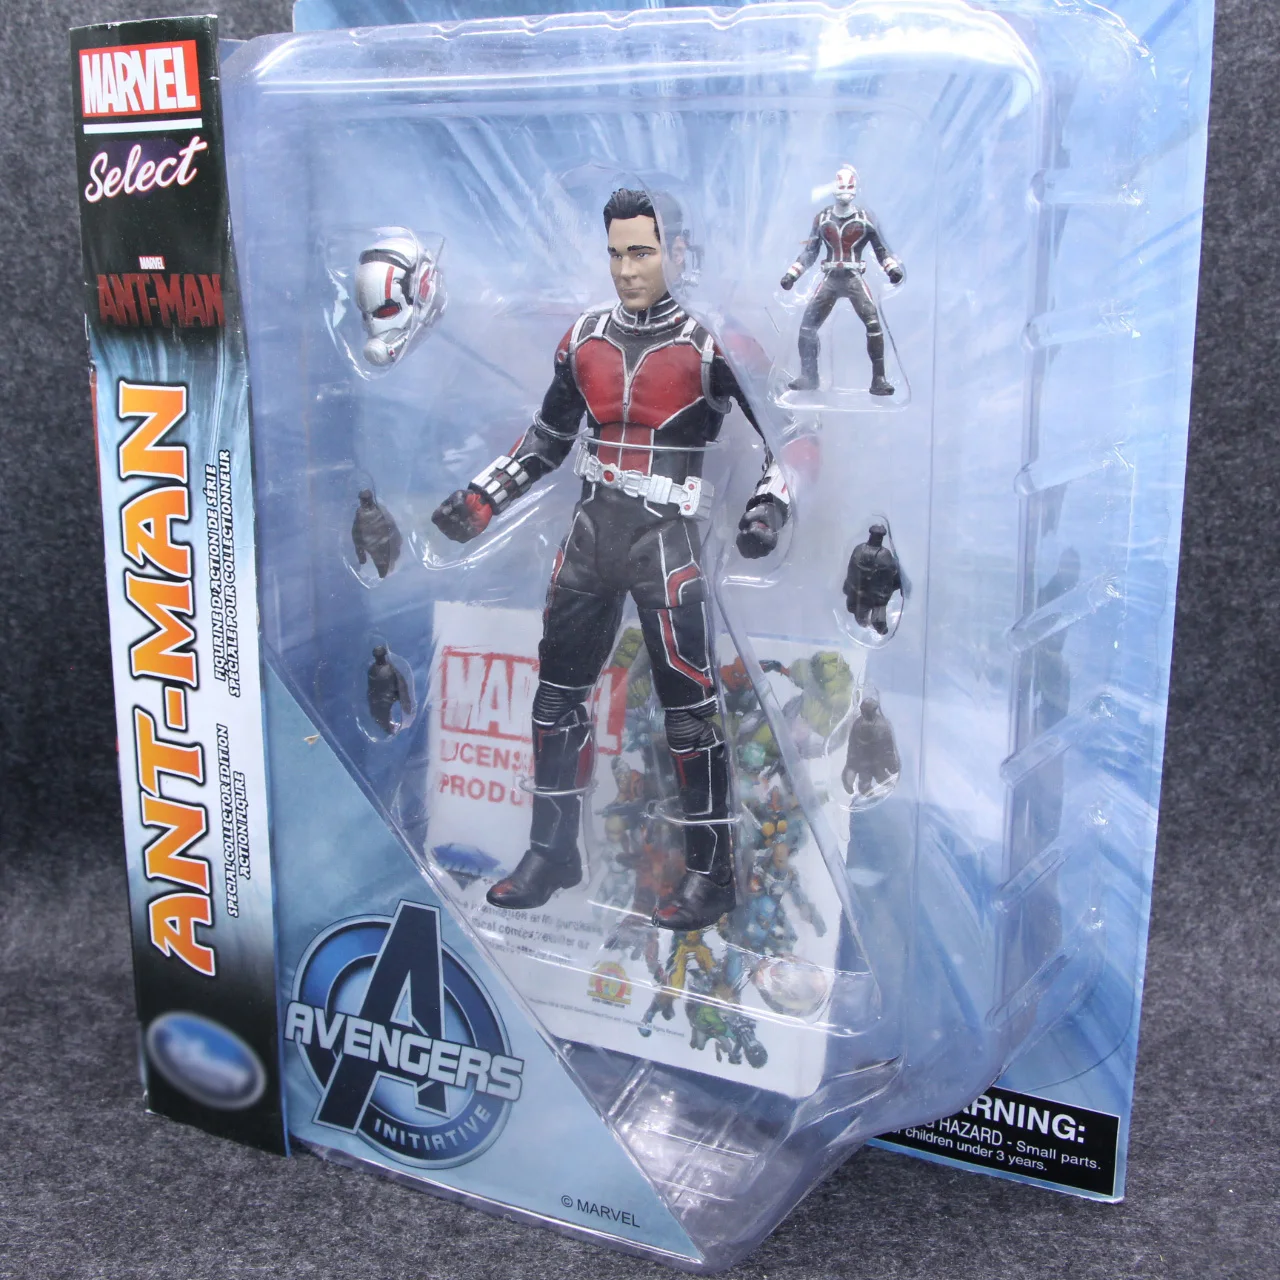 25 см Marvel выберите Мстители Человек-муравей супер герой Antman BJD фигурка модель игрушки